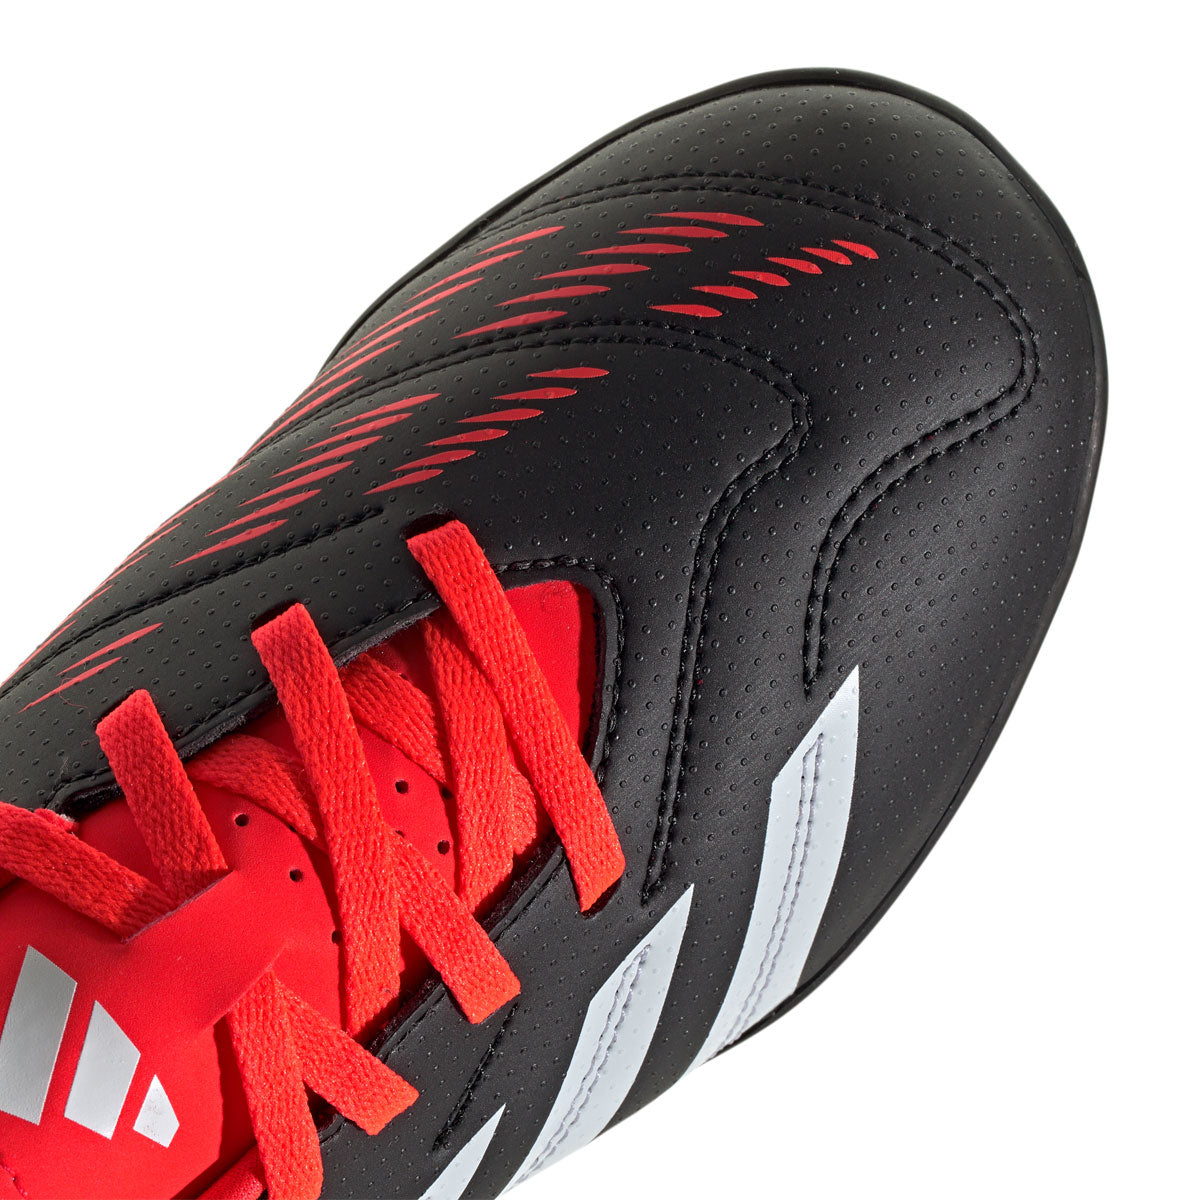 adidas Predator Club Turf Football Boots - Youth - Black/Red